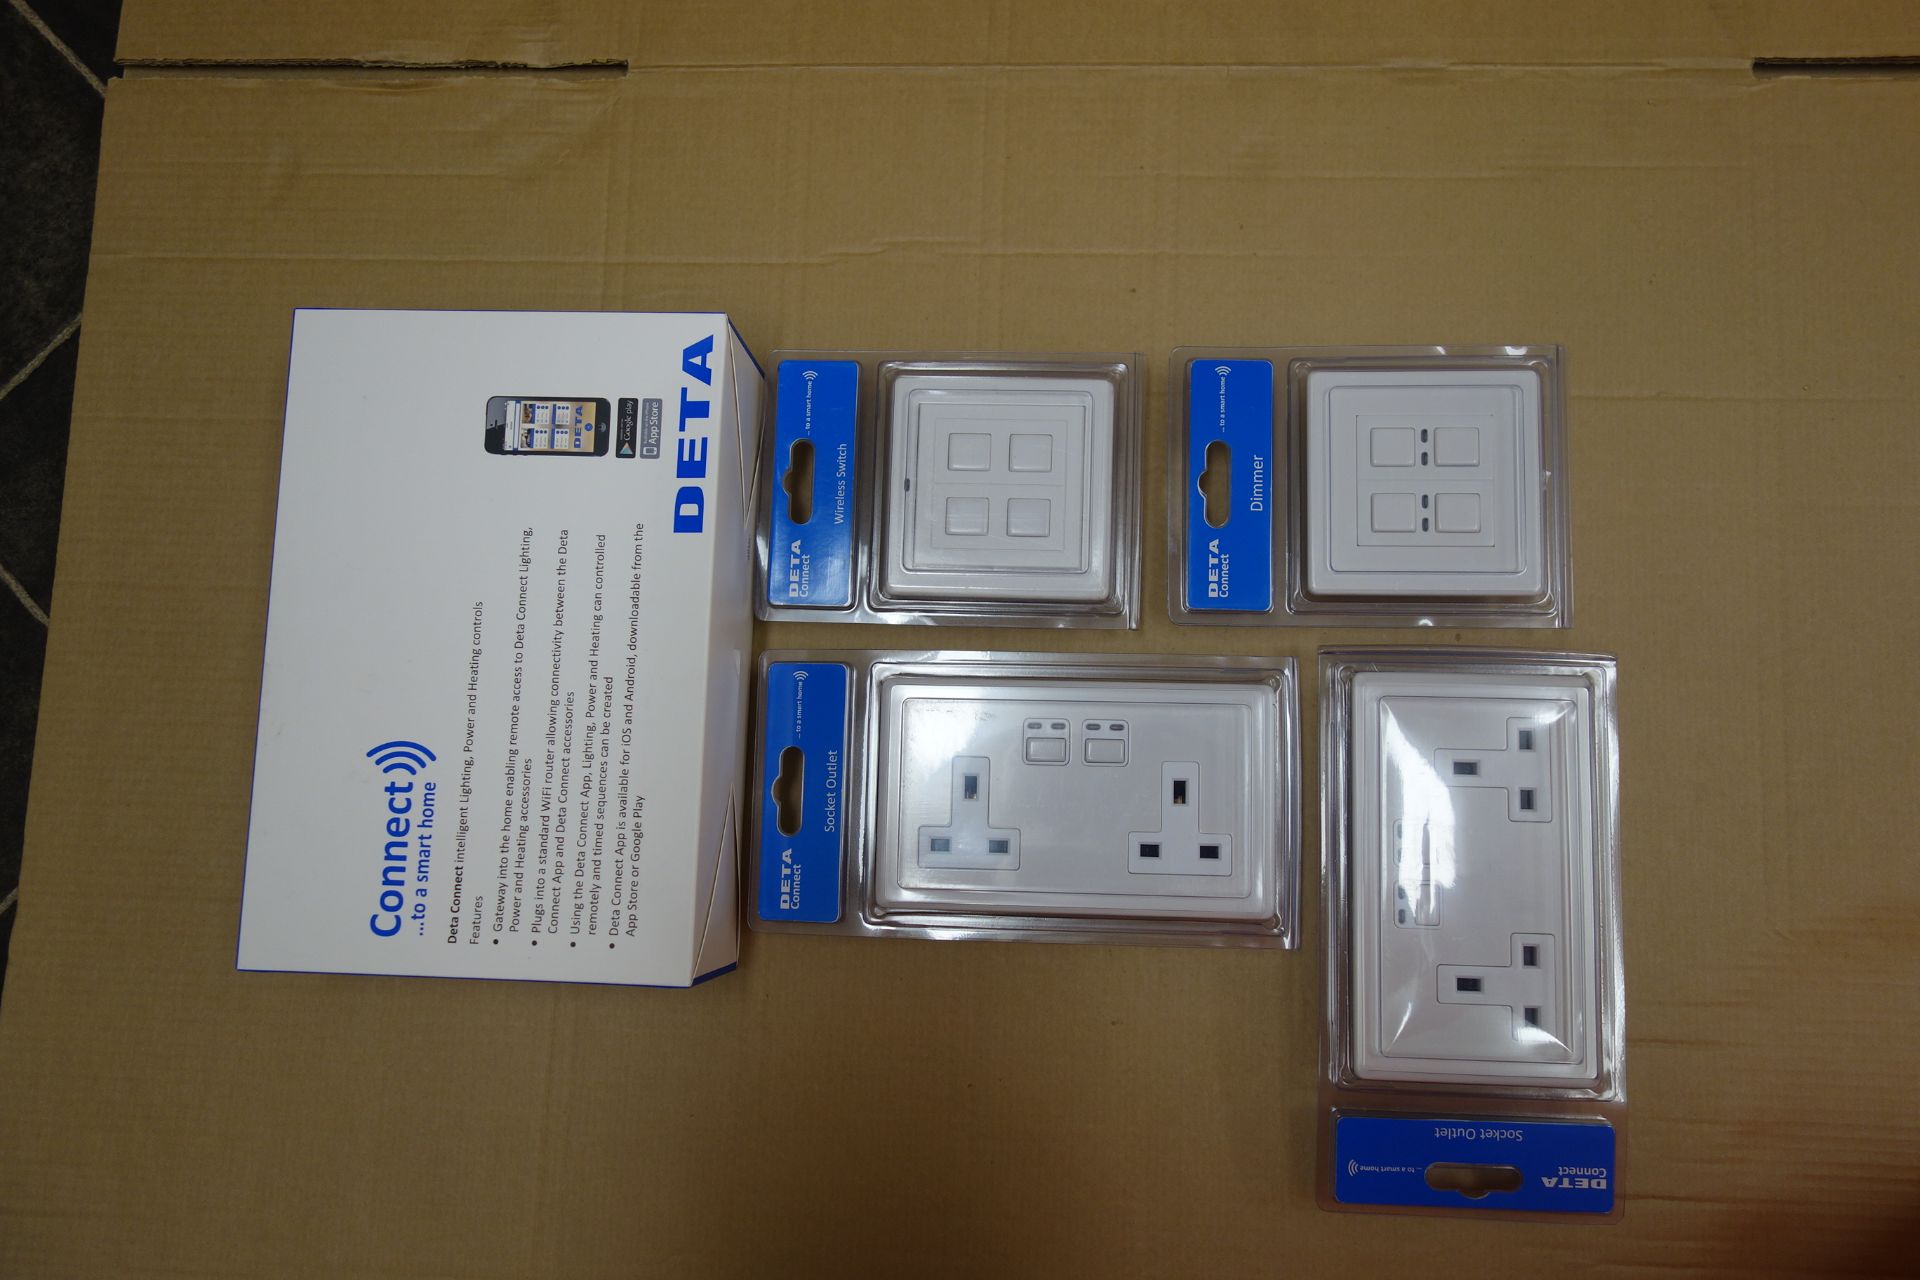 2 X Deta Wireless Conect Kits Each Kit Has 1 X LW930 2 X 9532WHW 1 X 9522WHW 1 X 9502WHW